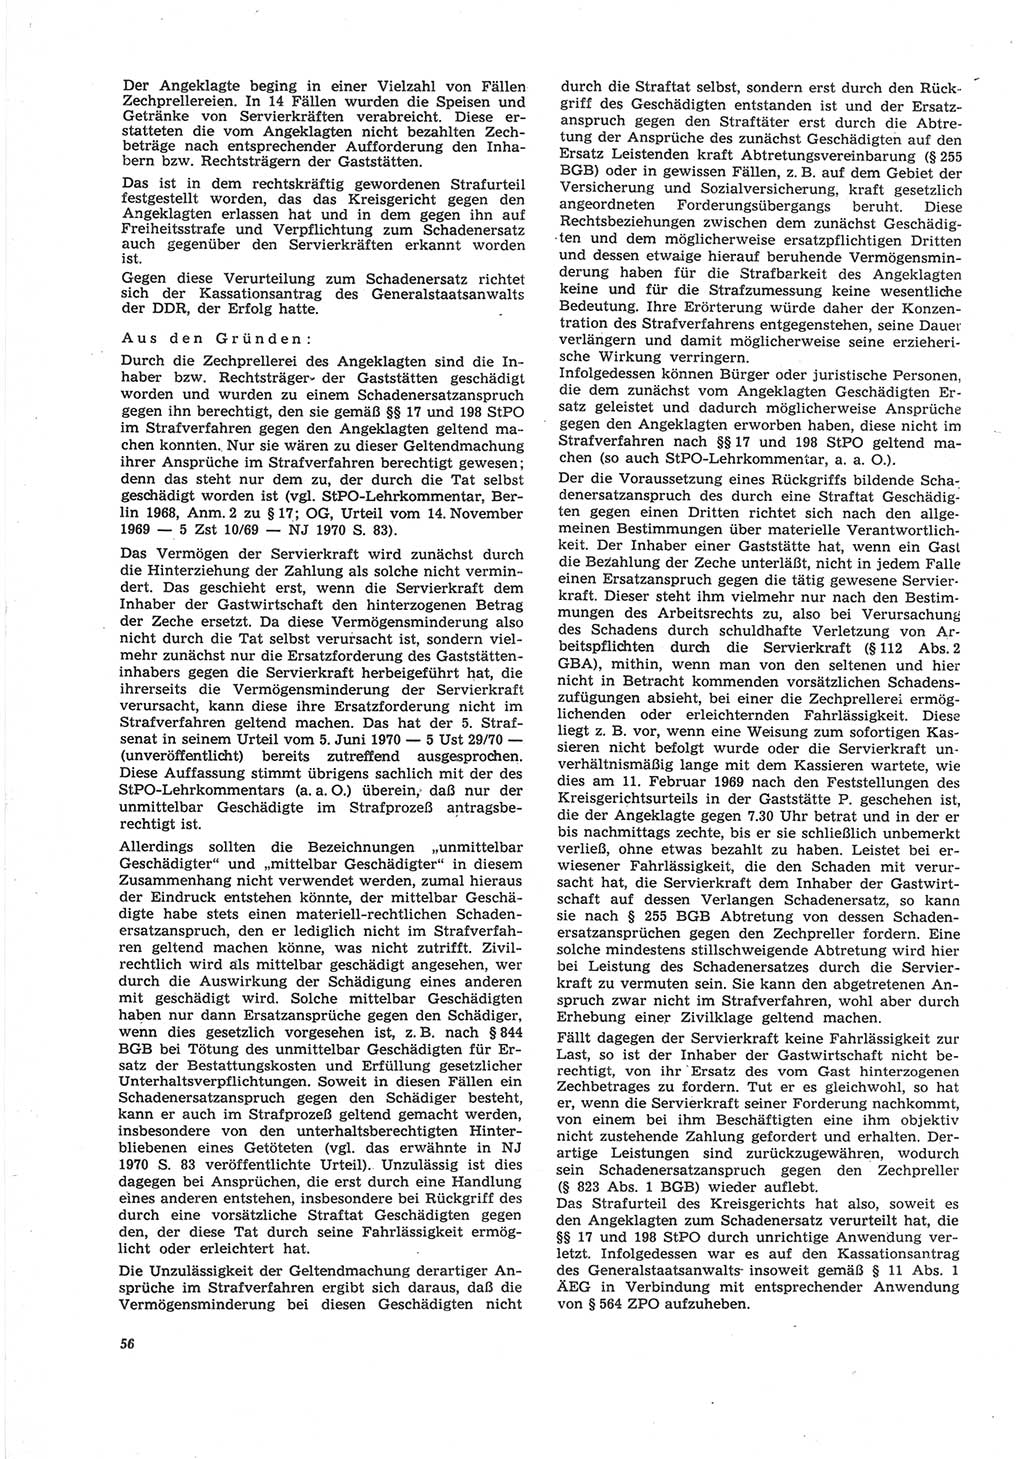 Neue Justiz (NJ), Zeitschrift für Recht und Rechtswissenschaft [Deutsche Demokratische Republik (DDR)], 25. Jahrgang 1971, Seite 56 (NJ DDR 1971, S. 56)